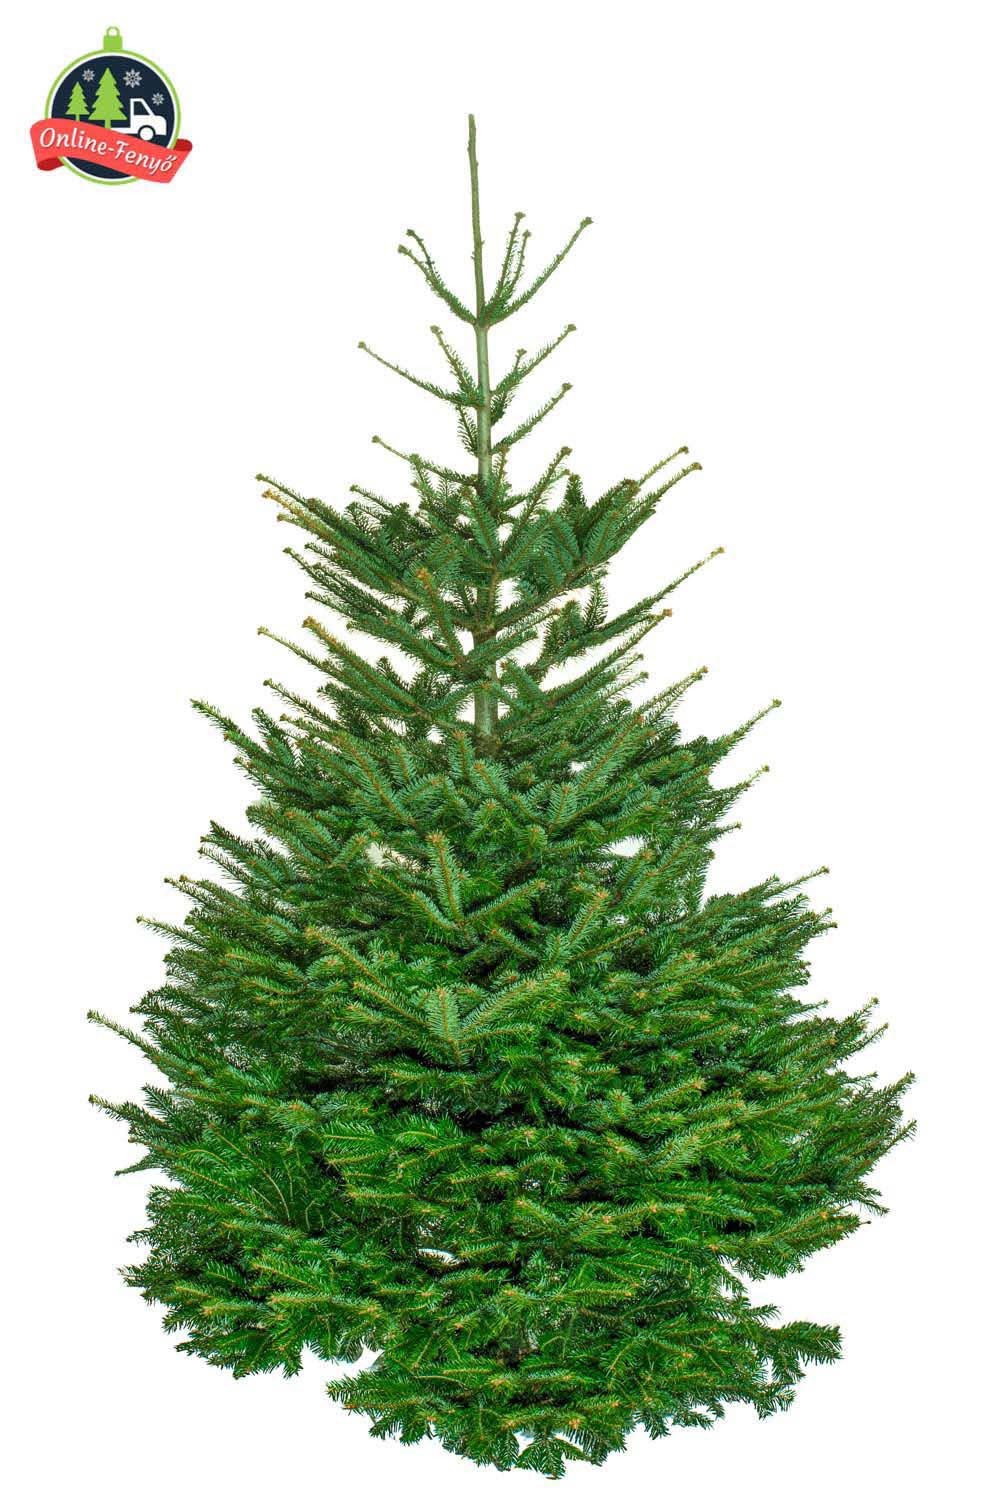 Cégek, üzletek számára 6, 7 méteres nordmann karácsonyfa, külterületekre ajánljuk